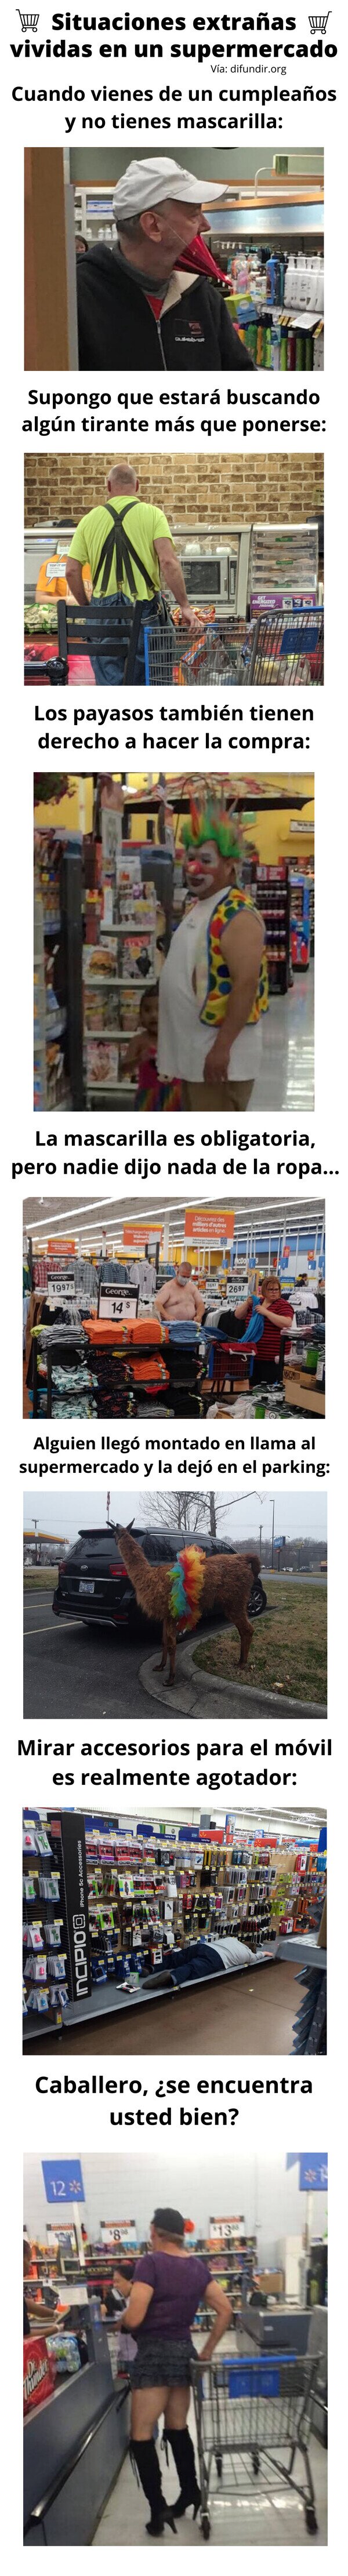 Meme_otros - Situaciones extrañas vividas en un supermercado